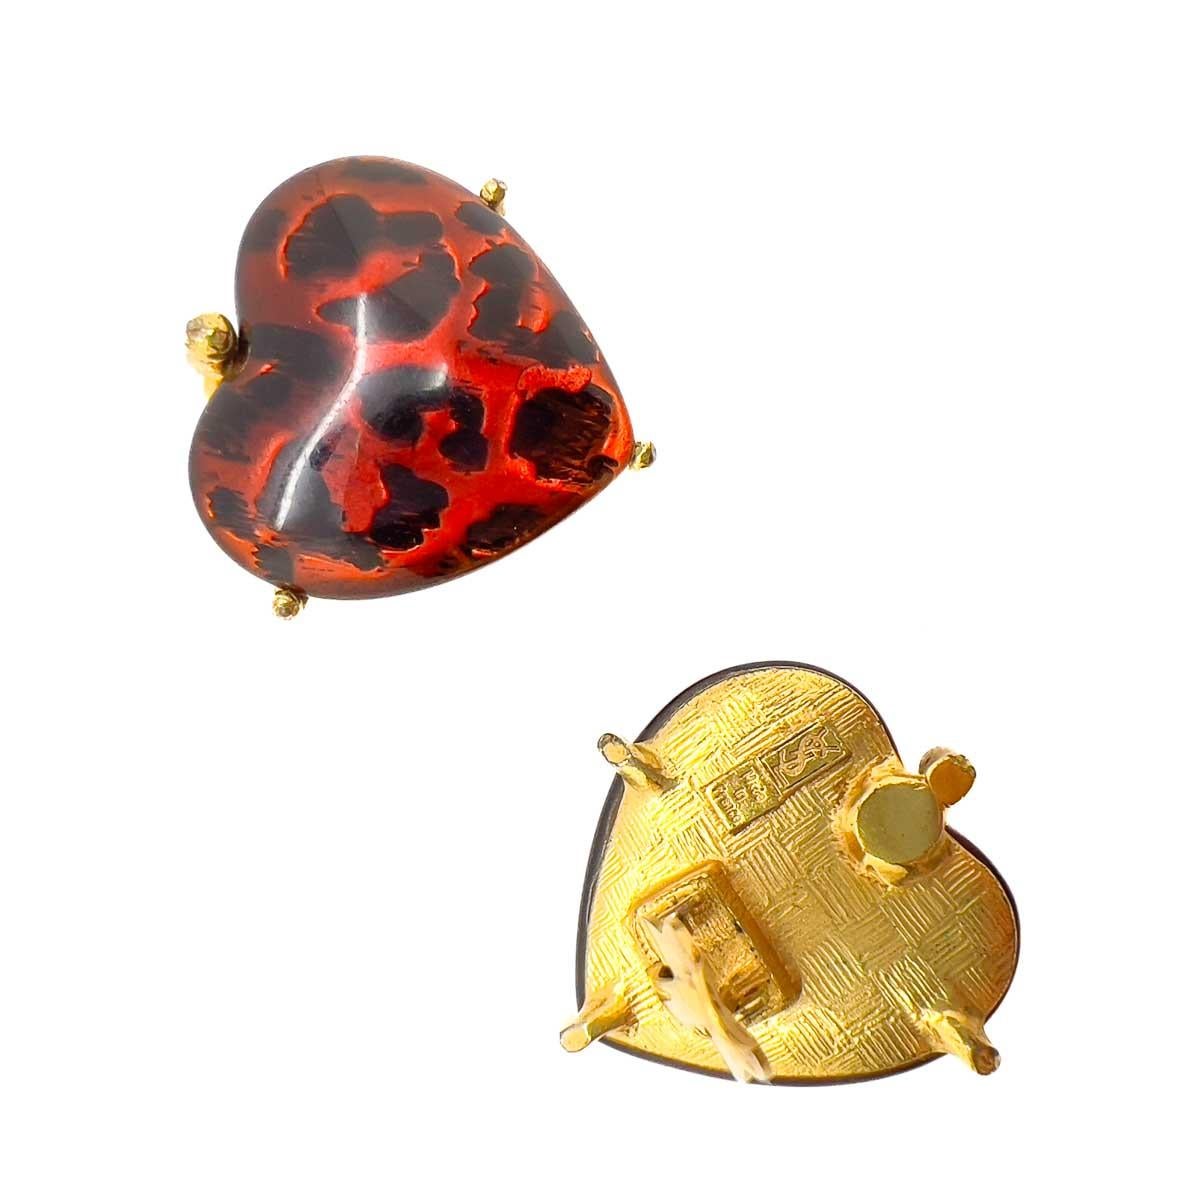 Ein Paar Vintage YSL Herz Leopard Ohrringe. Eine ultracoole Kombination des YSL-Herzmotivs mit einem Animalprint-Finish. Absolut schicke und zeitlose Ergänzungen für Ihr Stilrepertoire.
Nach seiner Zeit als Art Director bei Dior gründete Yves Saint